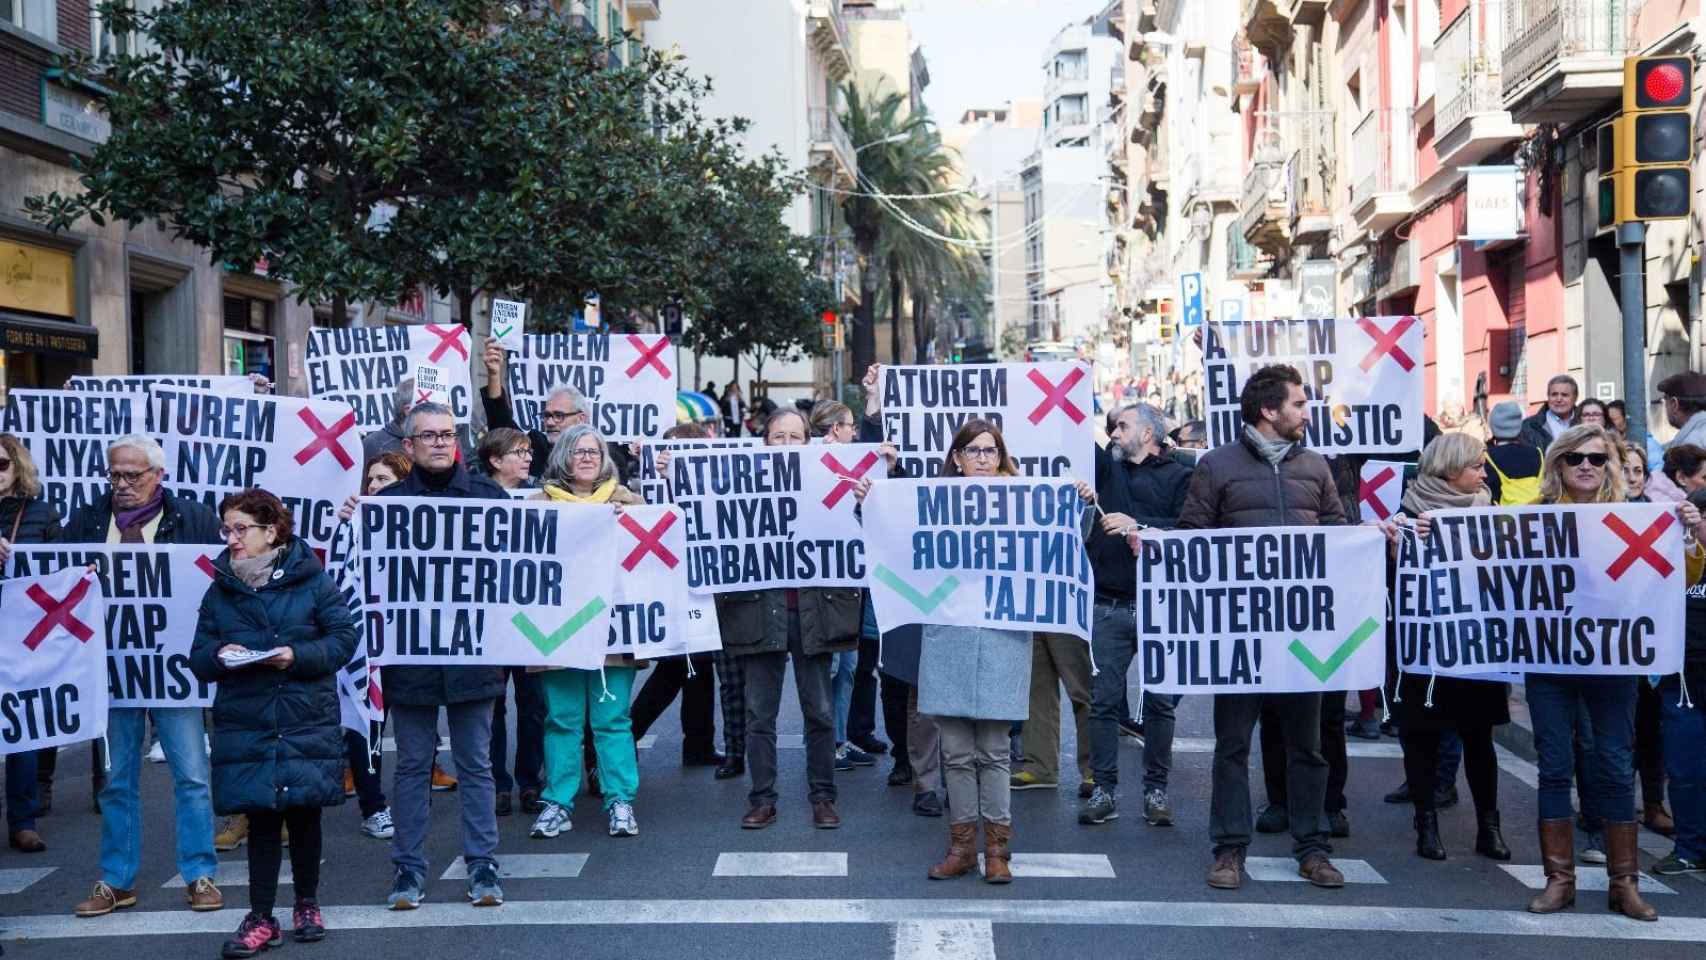 Vecinos de Gràcia manifestándose contra la chapuza urbanística en el interior de una isla / MA